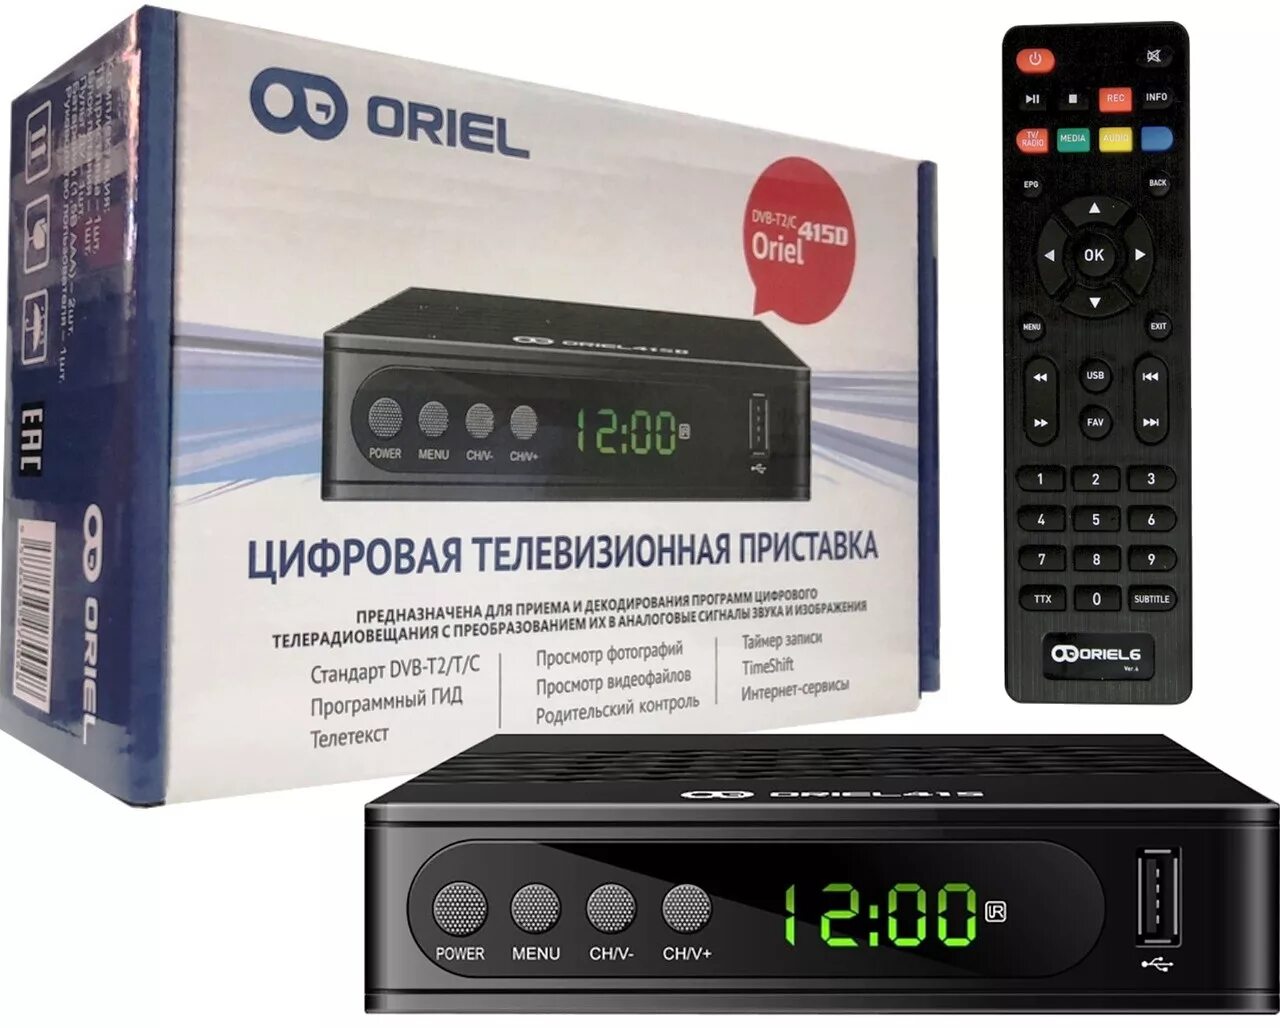 Приставка для цифрового телевидения Oriel 415d. Цифровая телевизионная приставка Oriel DVB-t2. Oriel 415 (DVB-t2/c). Приставка для цифрового телевидения Oriel 421.